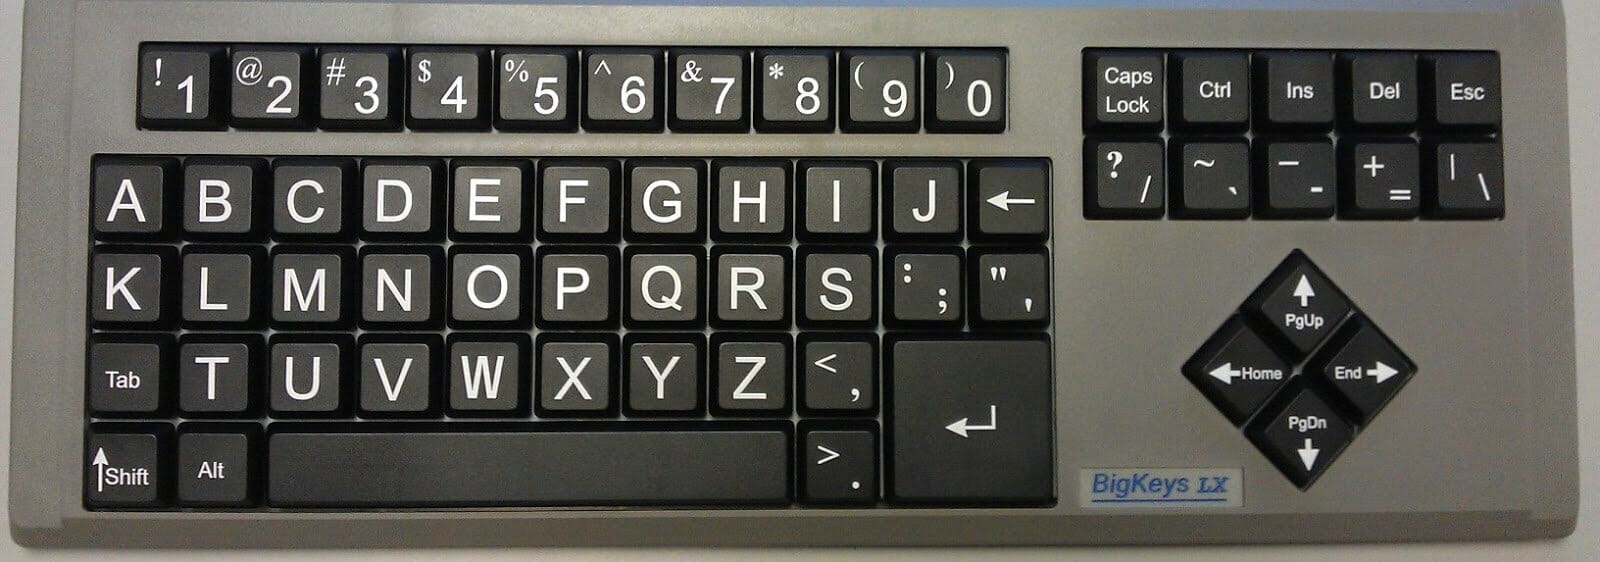 Keyboard yang paling banyak digunakan oleh pengguna komputer di indonesia adalah jenis